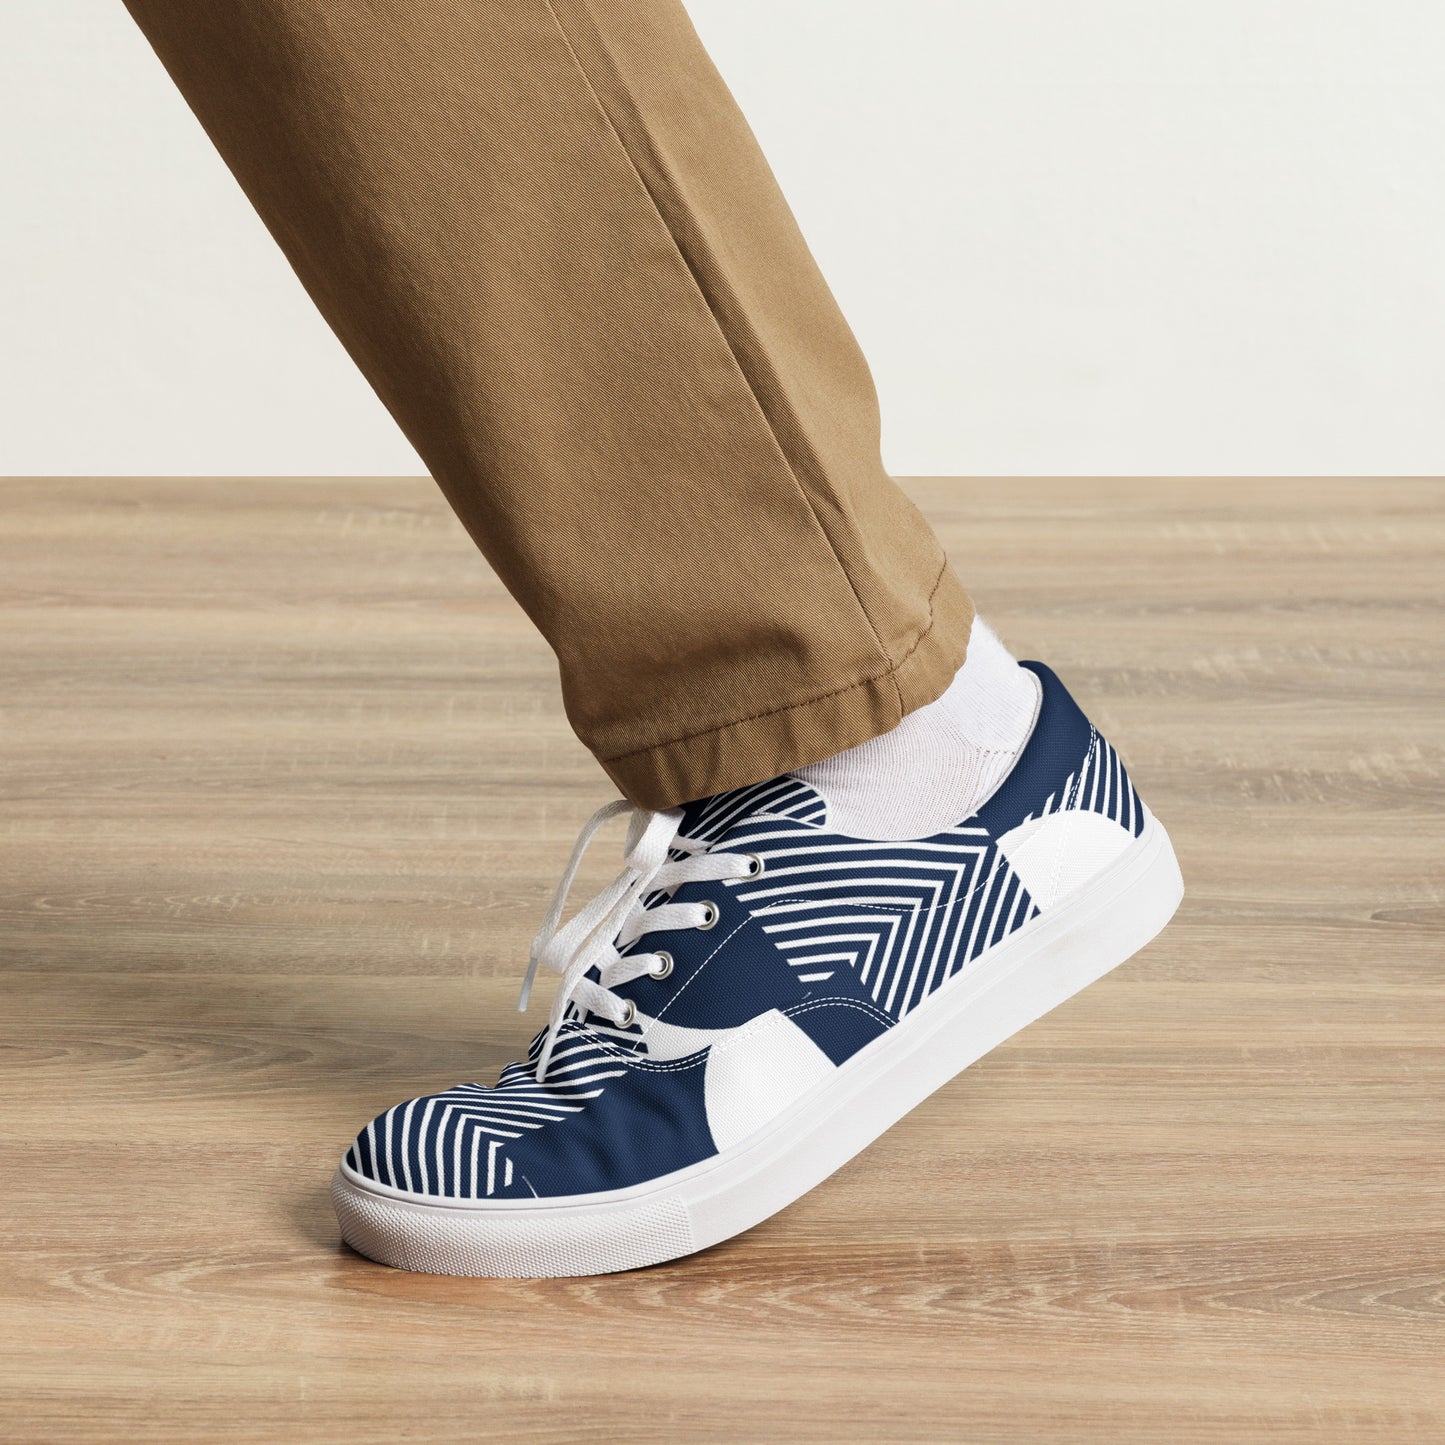 Blue Geometric - Men’s lace-up canvas shoes Mens Lace Up Canvas Shoes